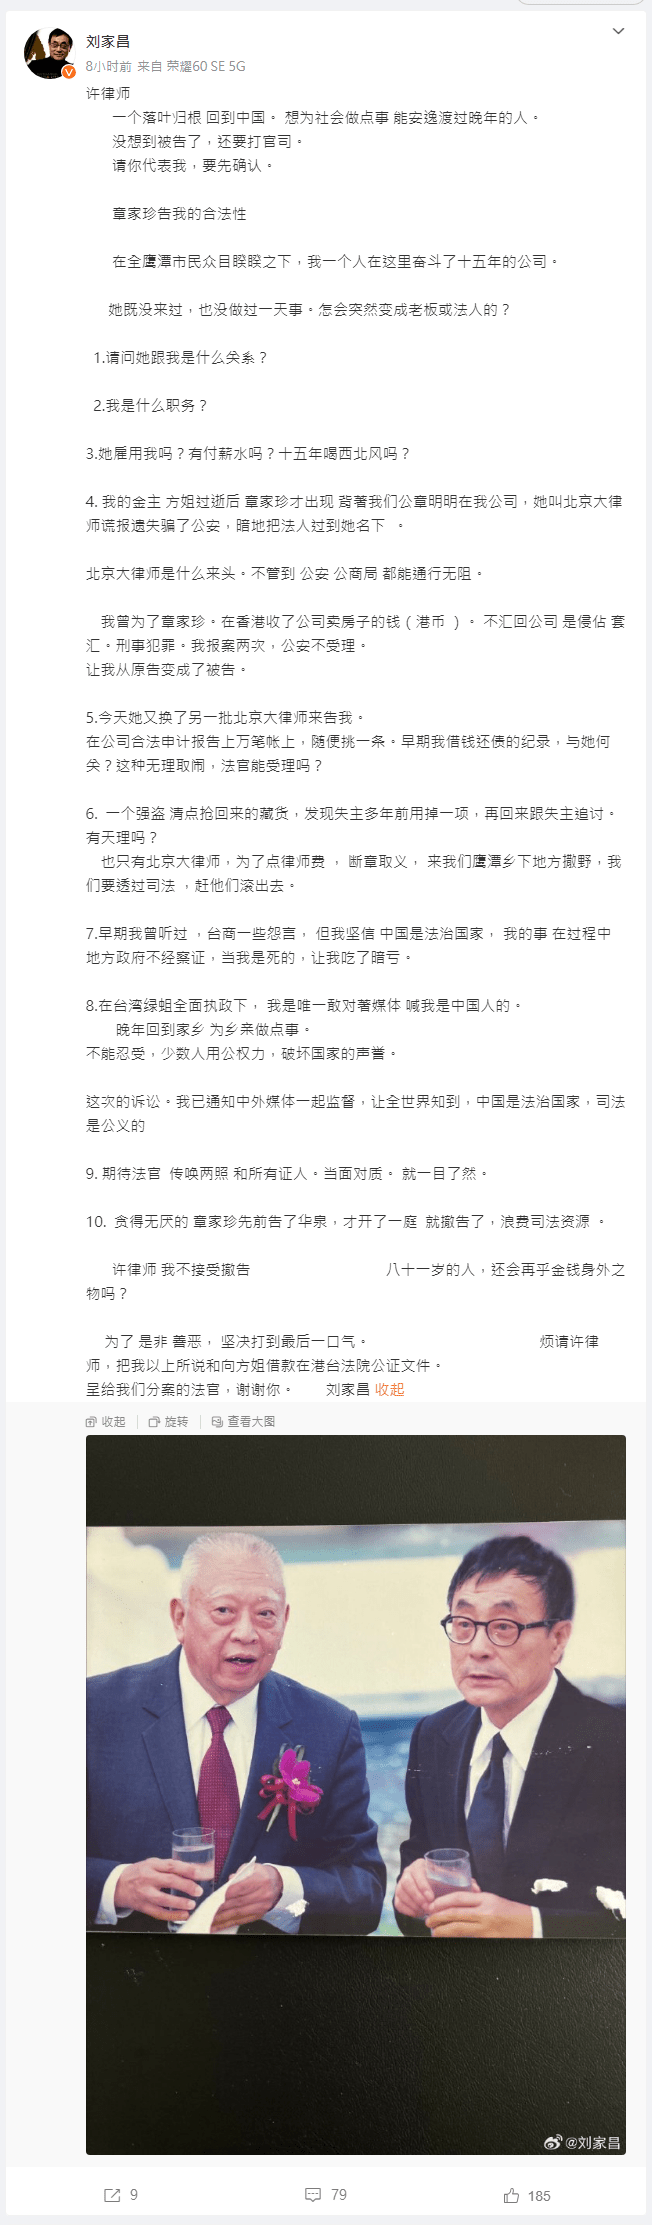 刘家昌又在微博发文，最后刘家昌更说：“许律师我不接受撤告，八十一岁的人，还会再乎金钱身外之物吗？为了是非善恶，坚决打到最后一口气。”